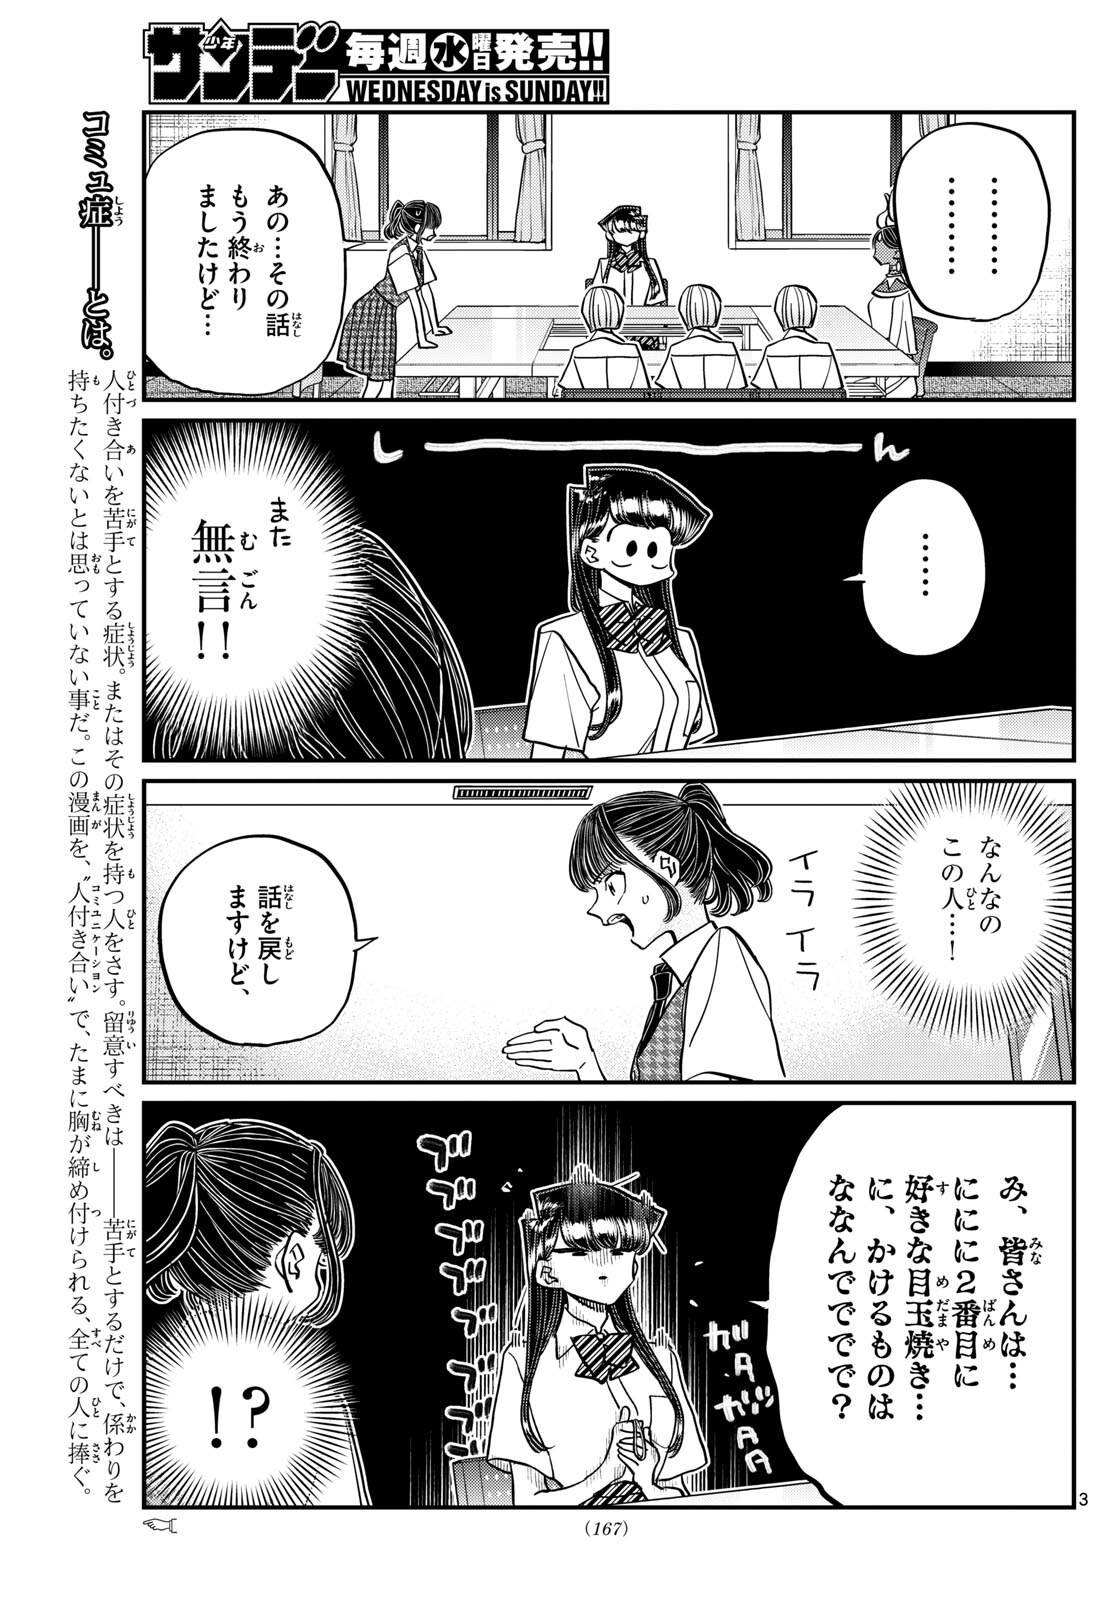 Komi-san wa Komyushou Desu - Chapter 441 - Page 3